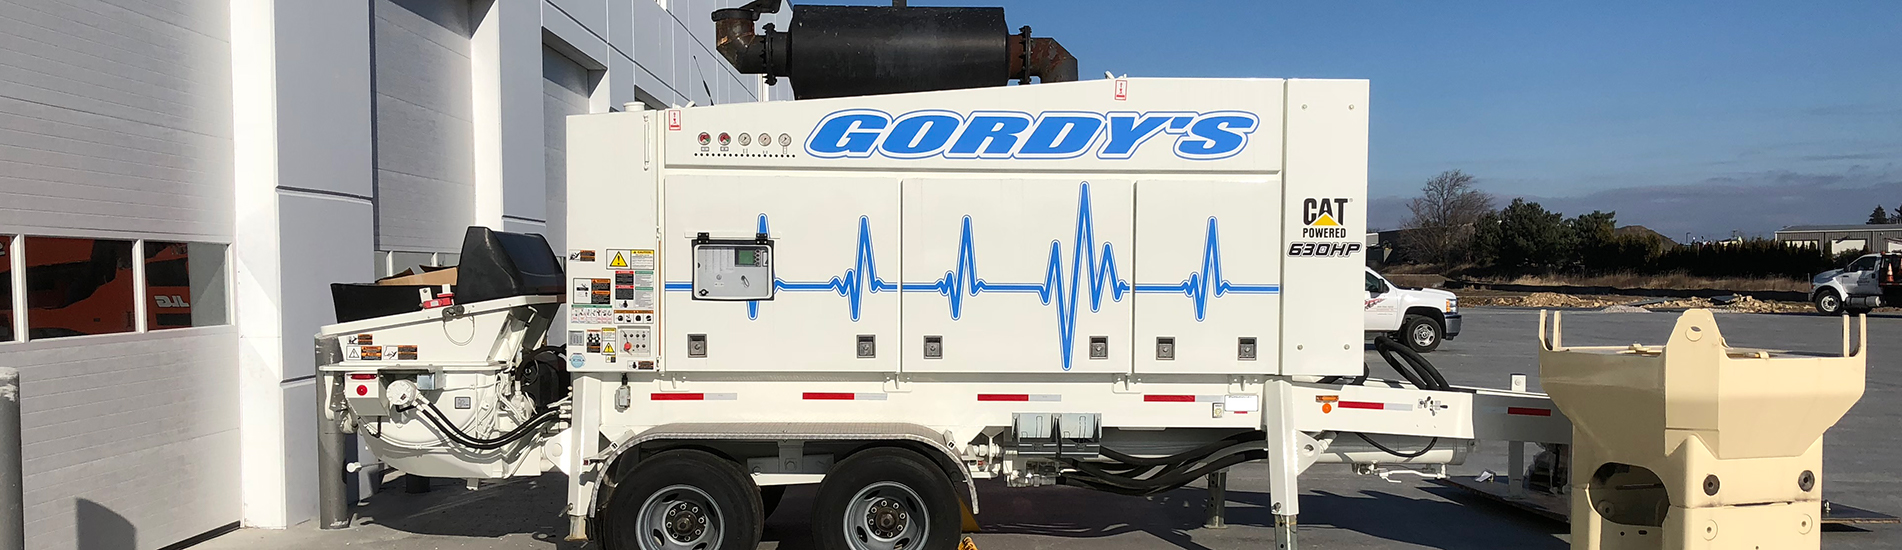 Gordy"s Concrete Pumping Service Line Pumps Concrete Placing Equipment